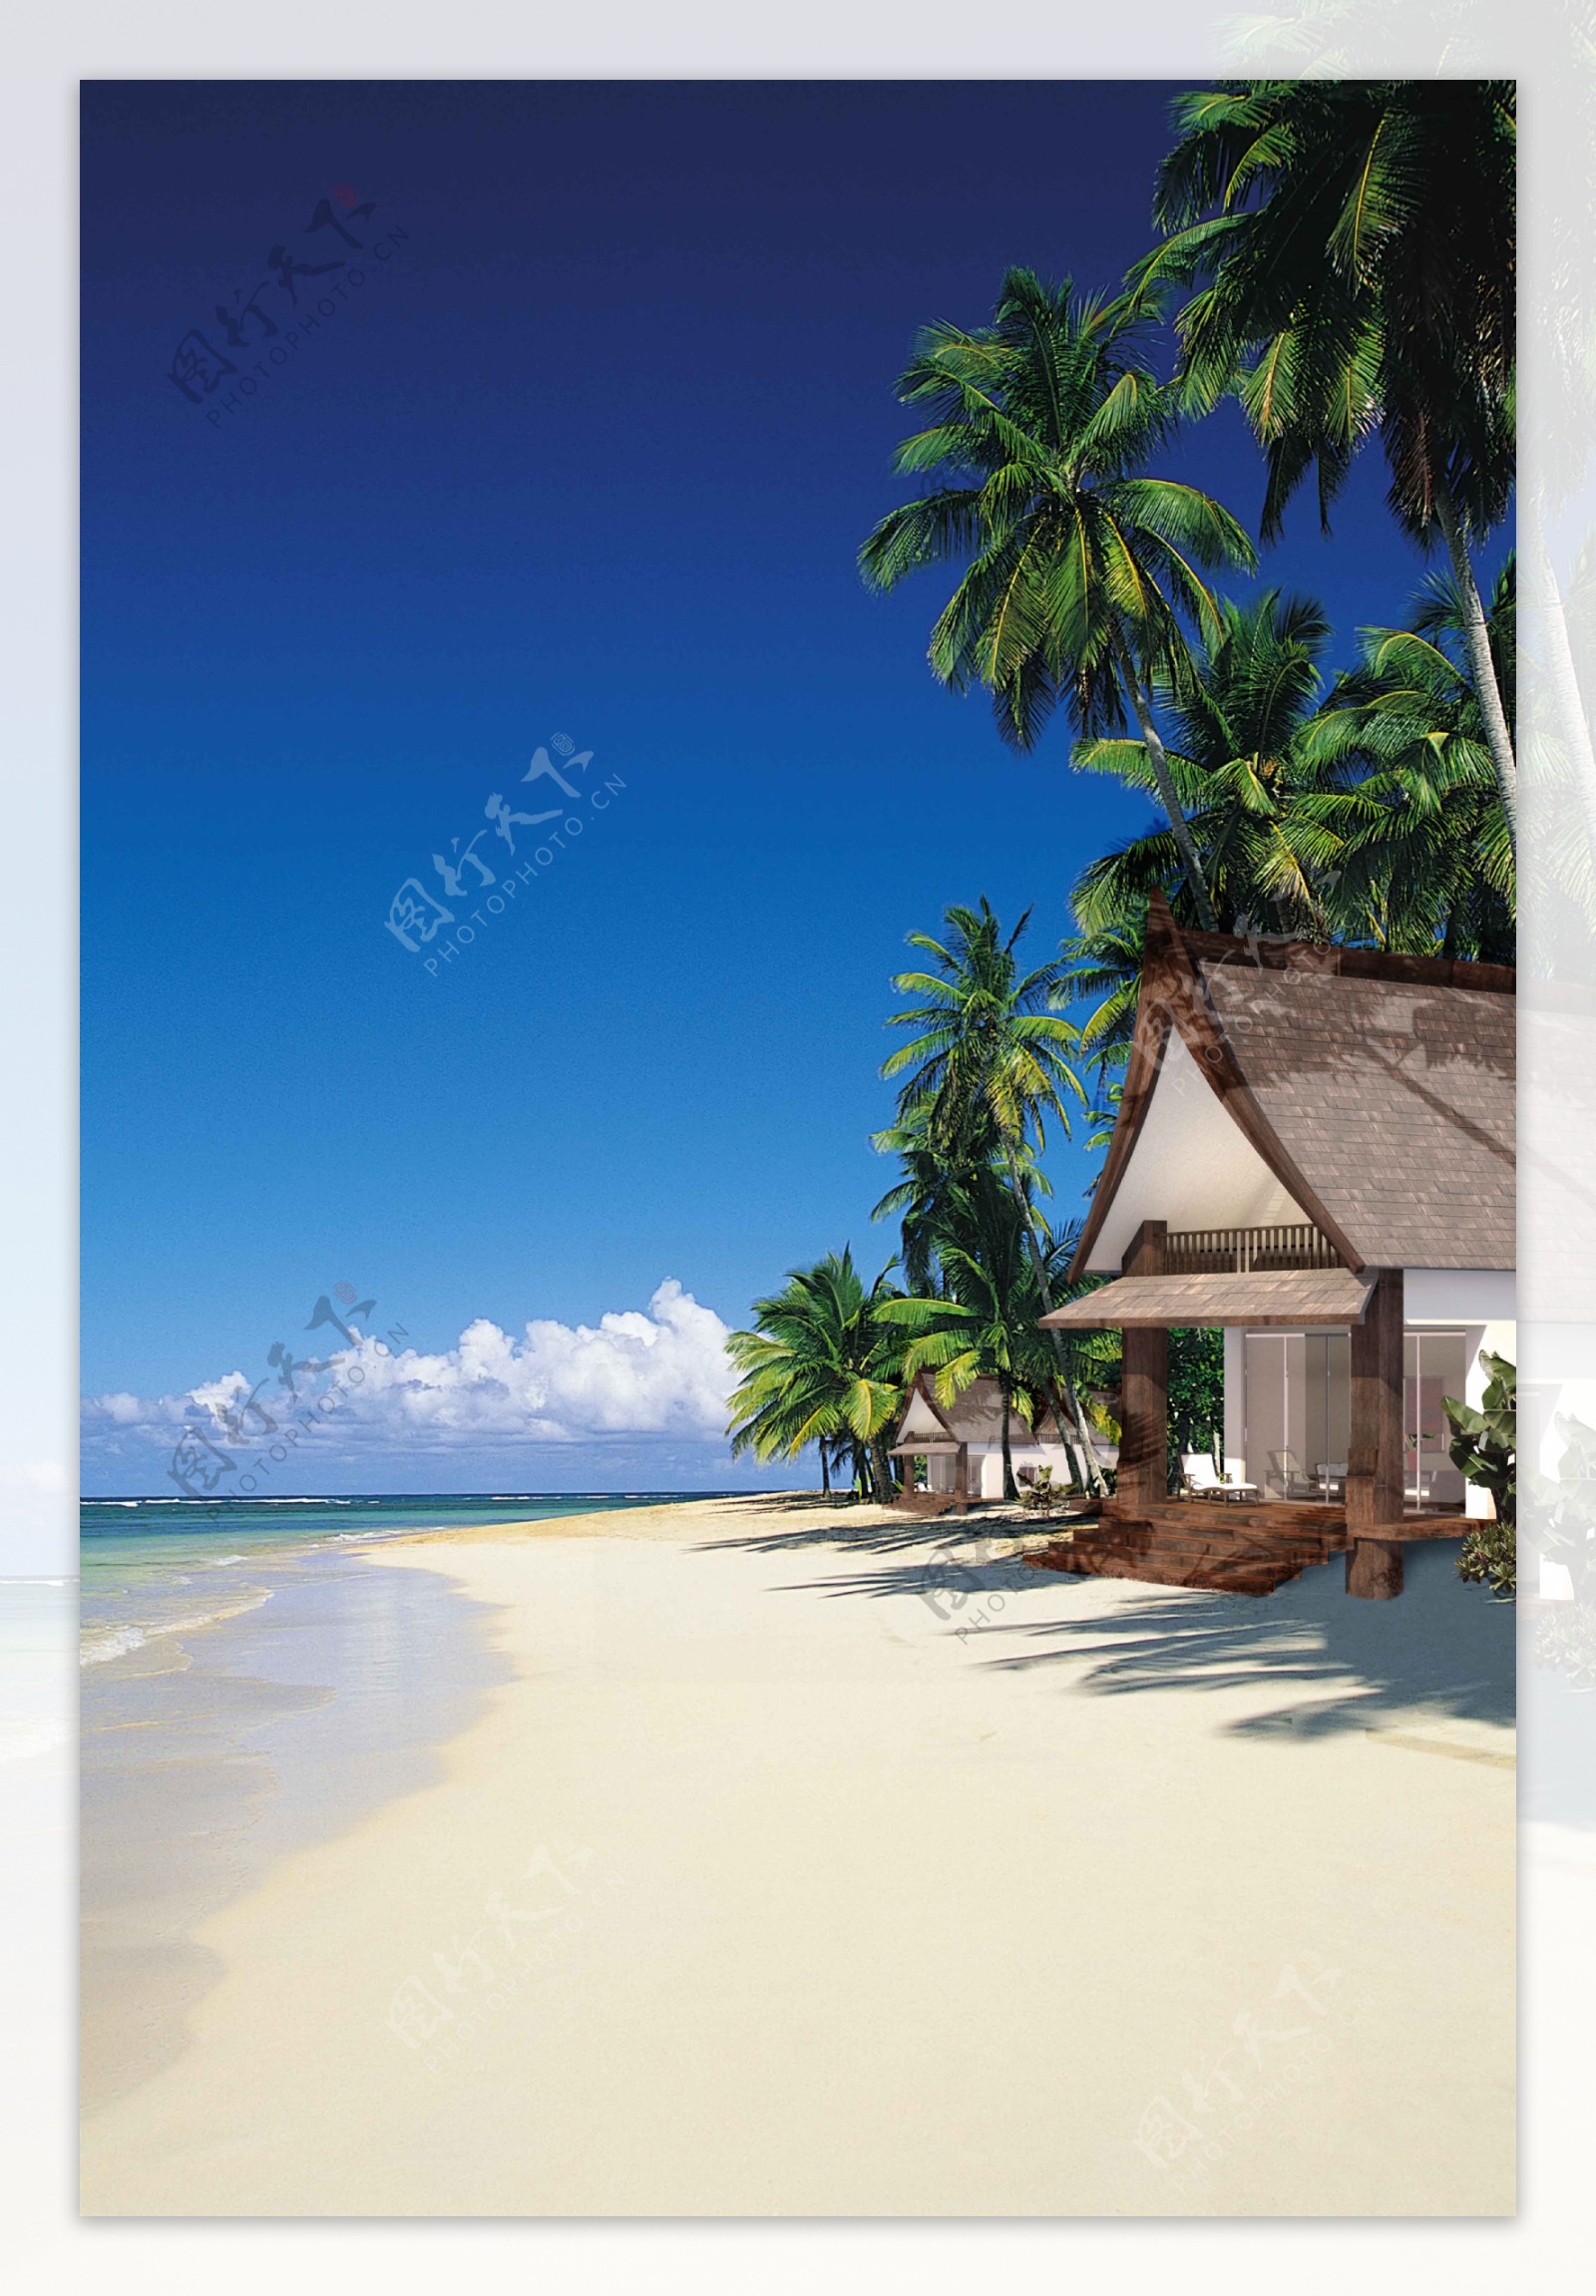 巴厘岛VILLA度假屋图片